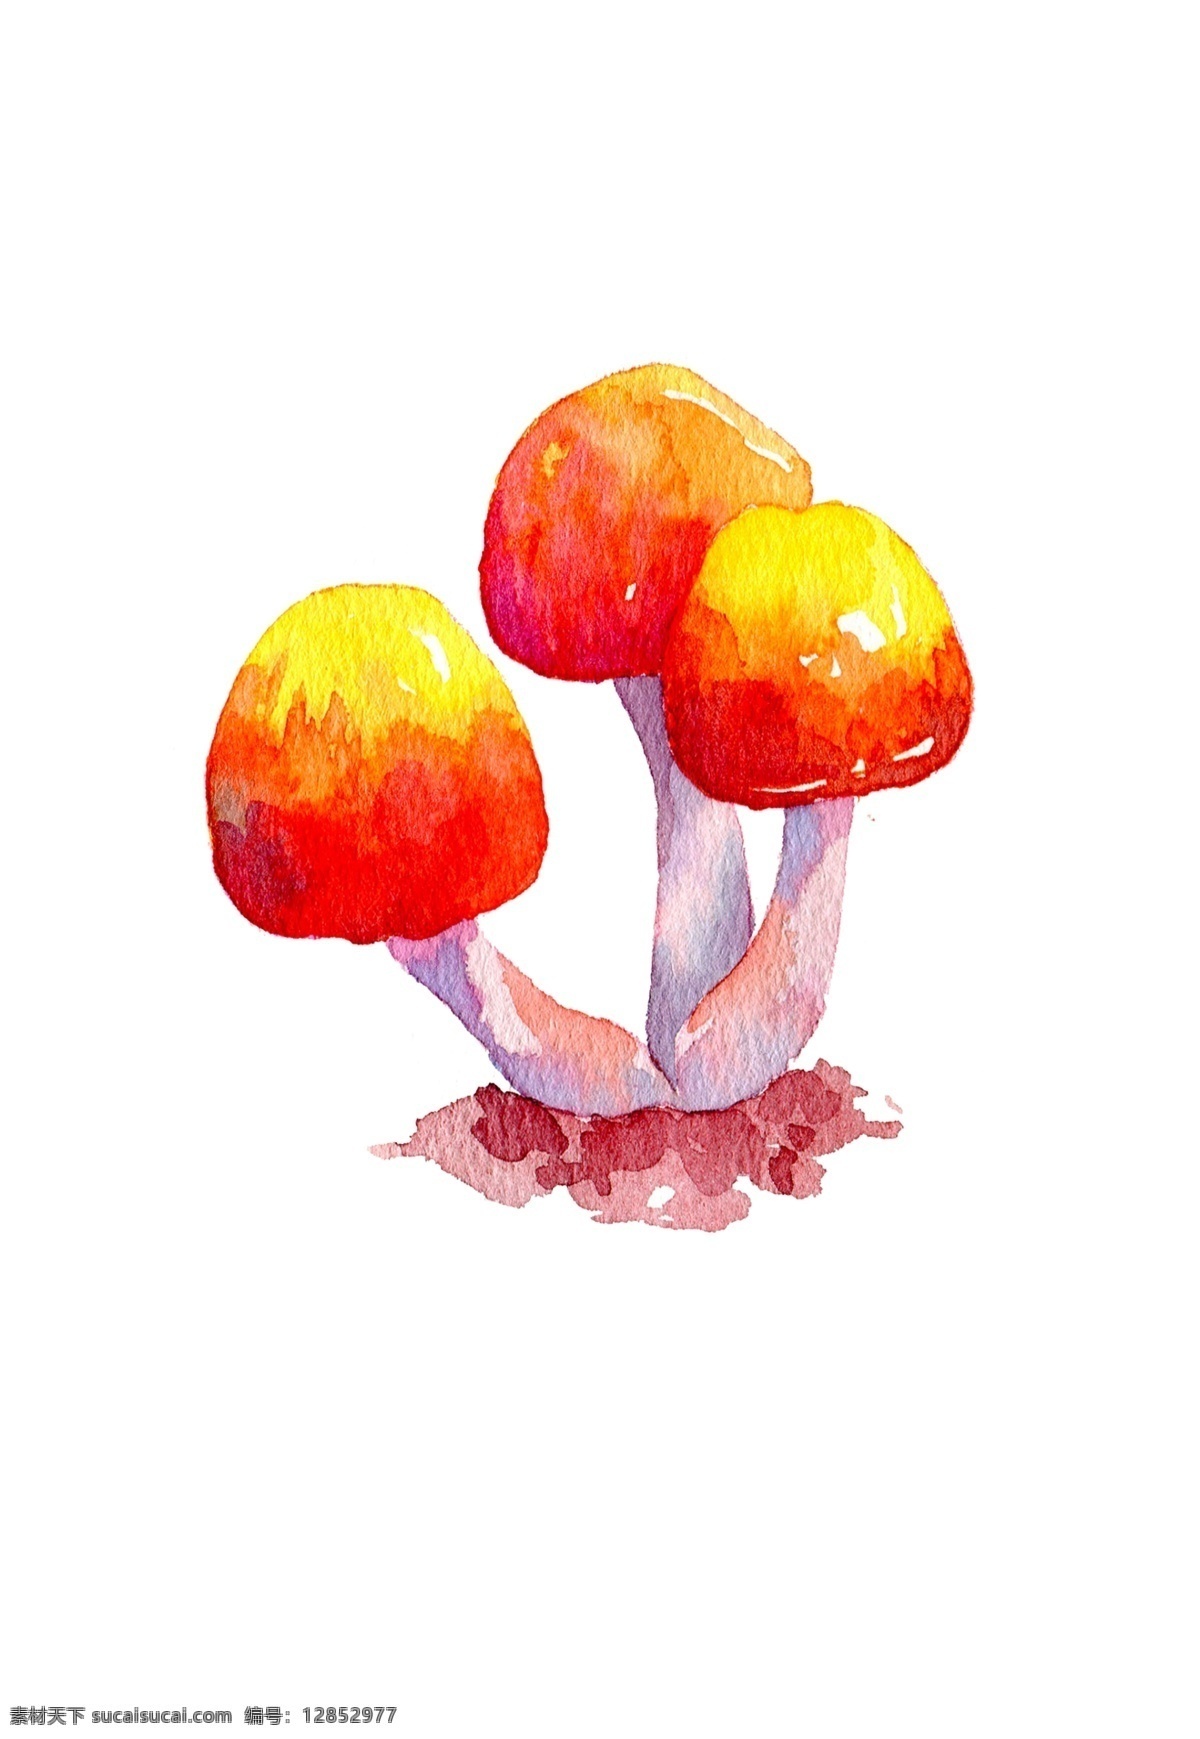 蘑菇 插画 食用 秋天 秋季 菇类 手绘蘑菇 水彩蘑菇 秋日蘑菇 蘑菇插画 食用蘑菇 菌类